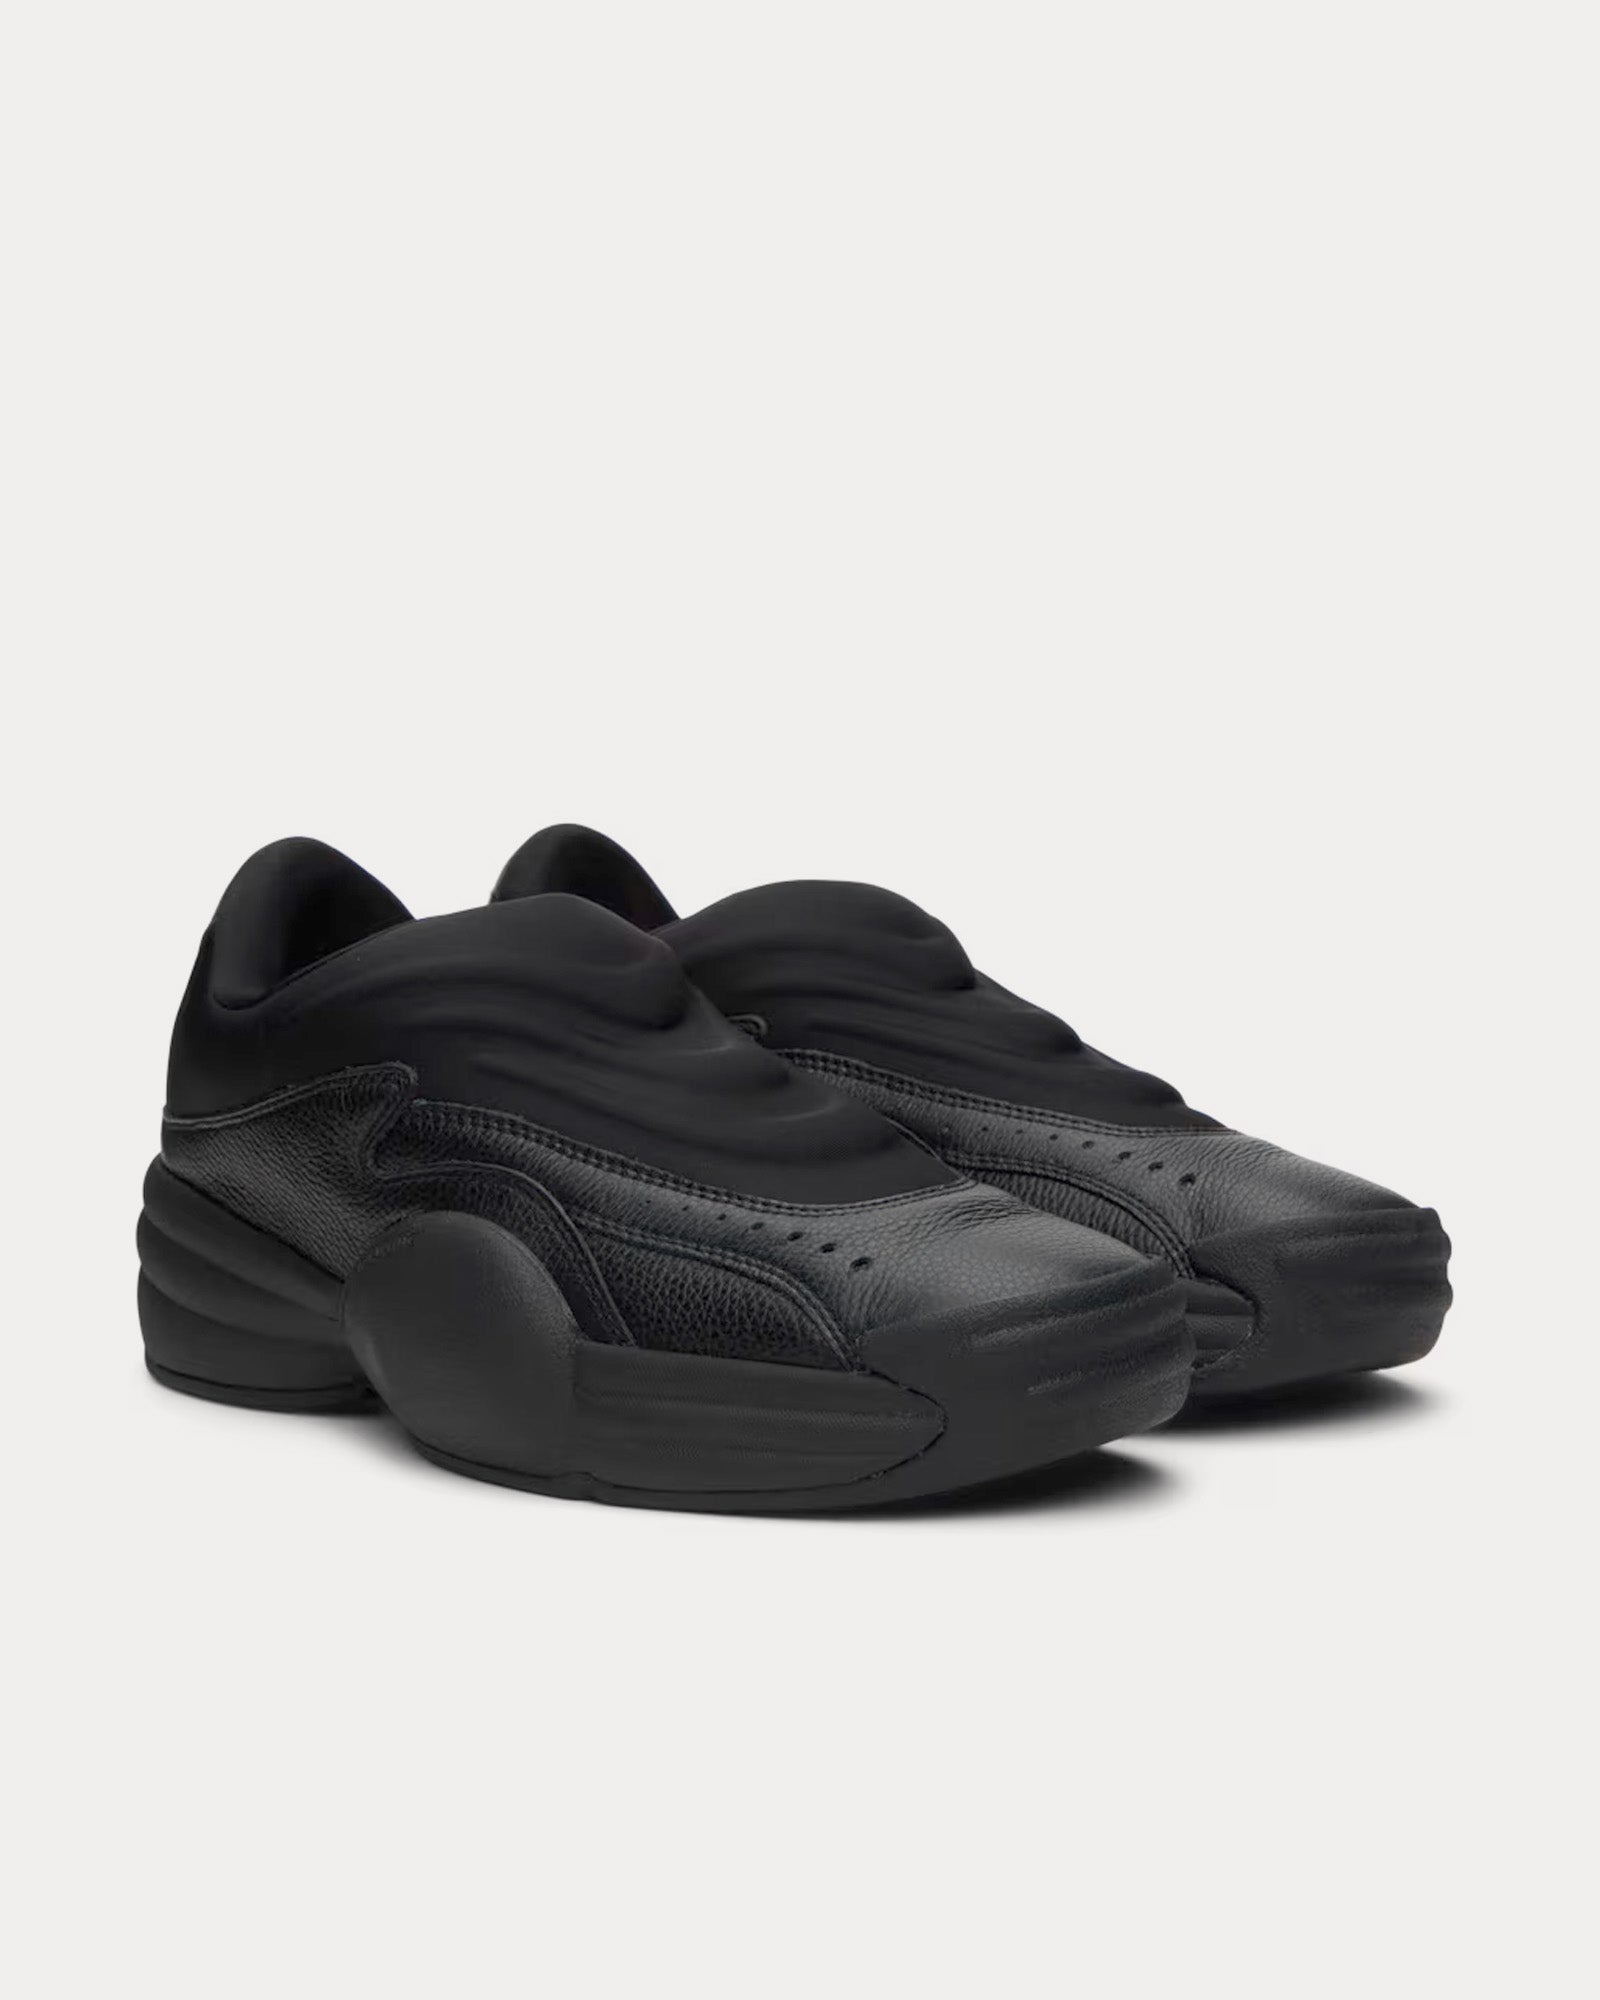 Alexander Wang - AW Hoop Pebble Leather Black Slip On Sneakers